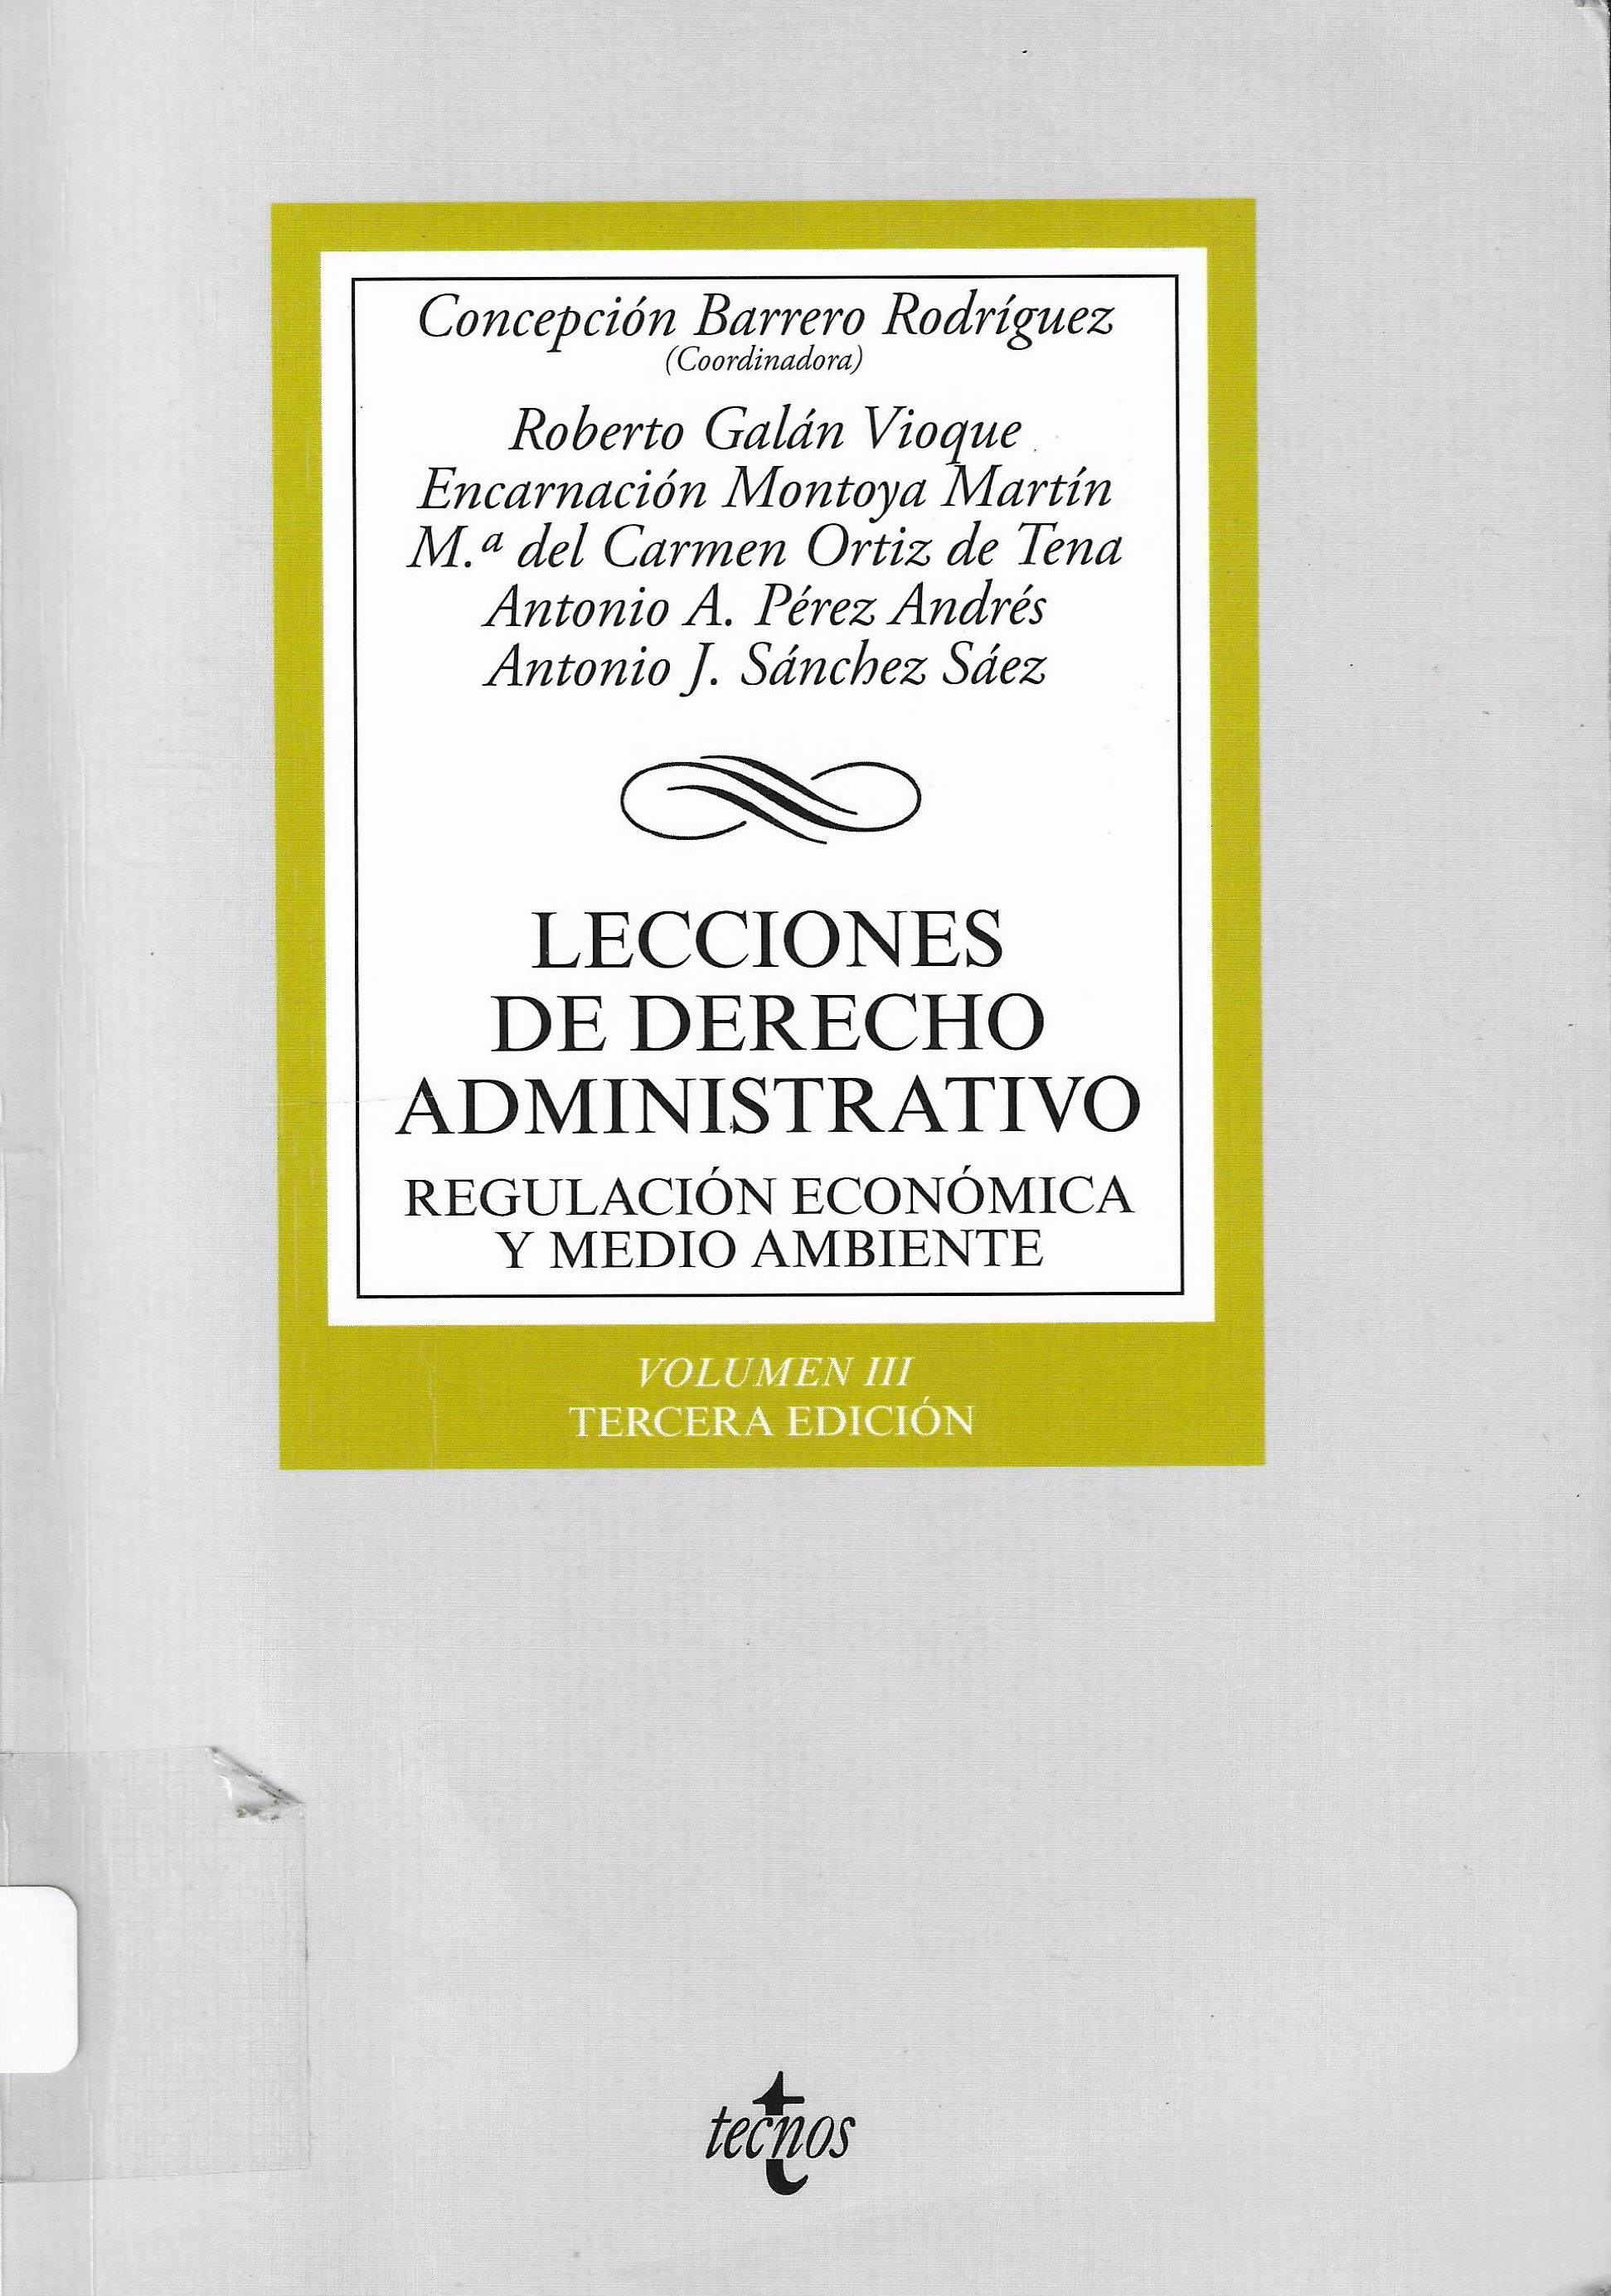 Imagen de portada del libro Lecciones de derecho administrativo